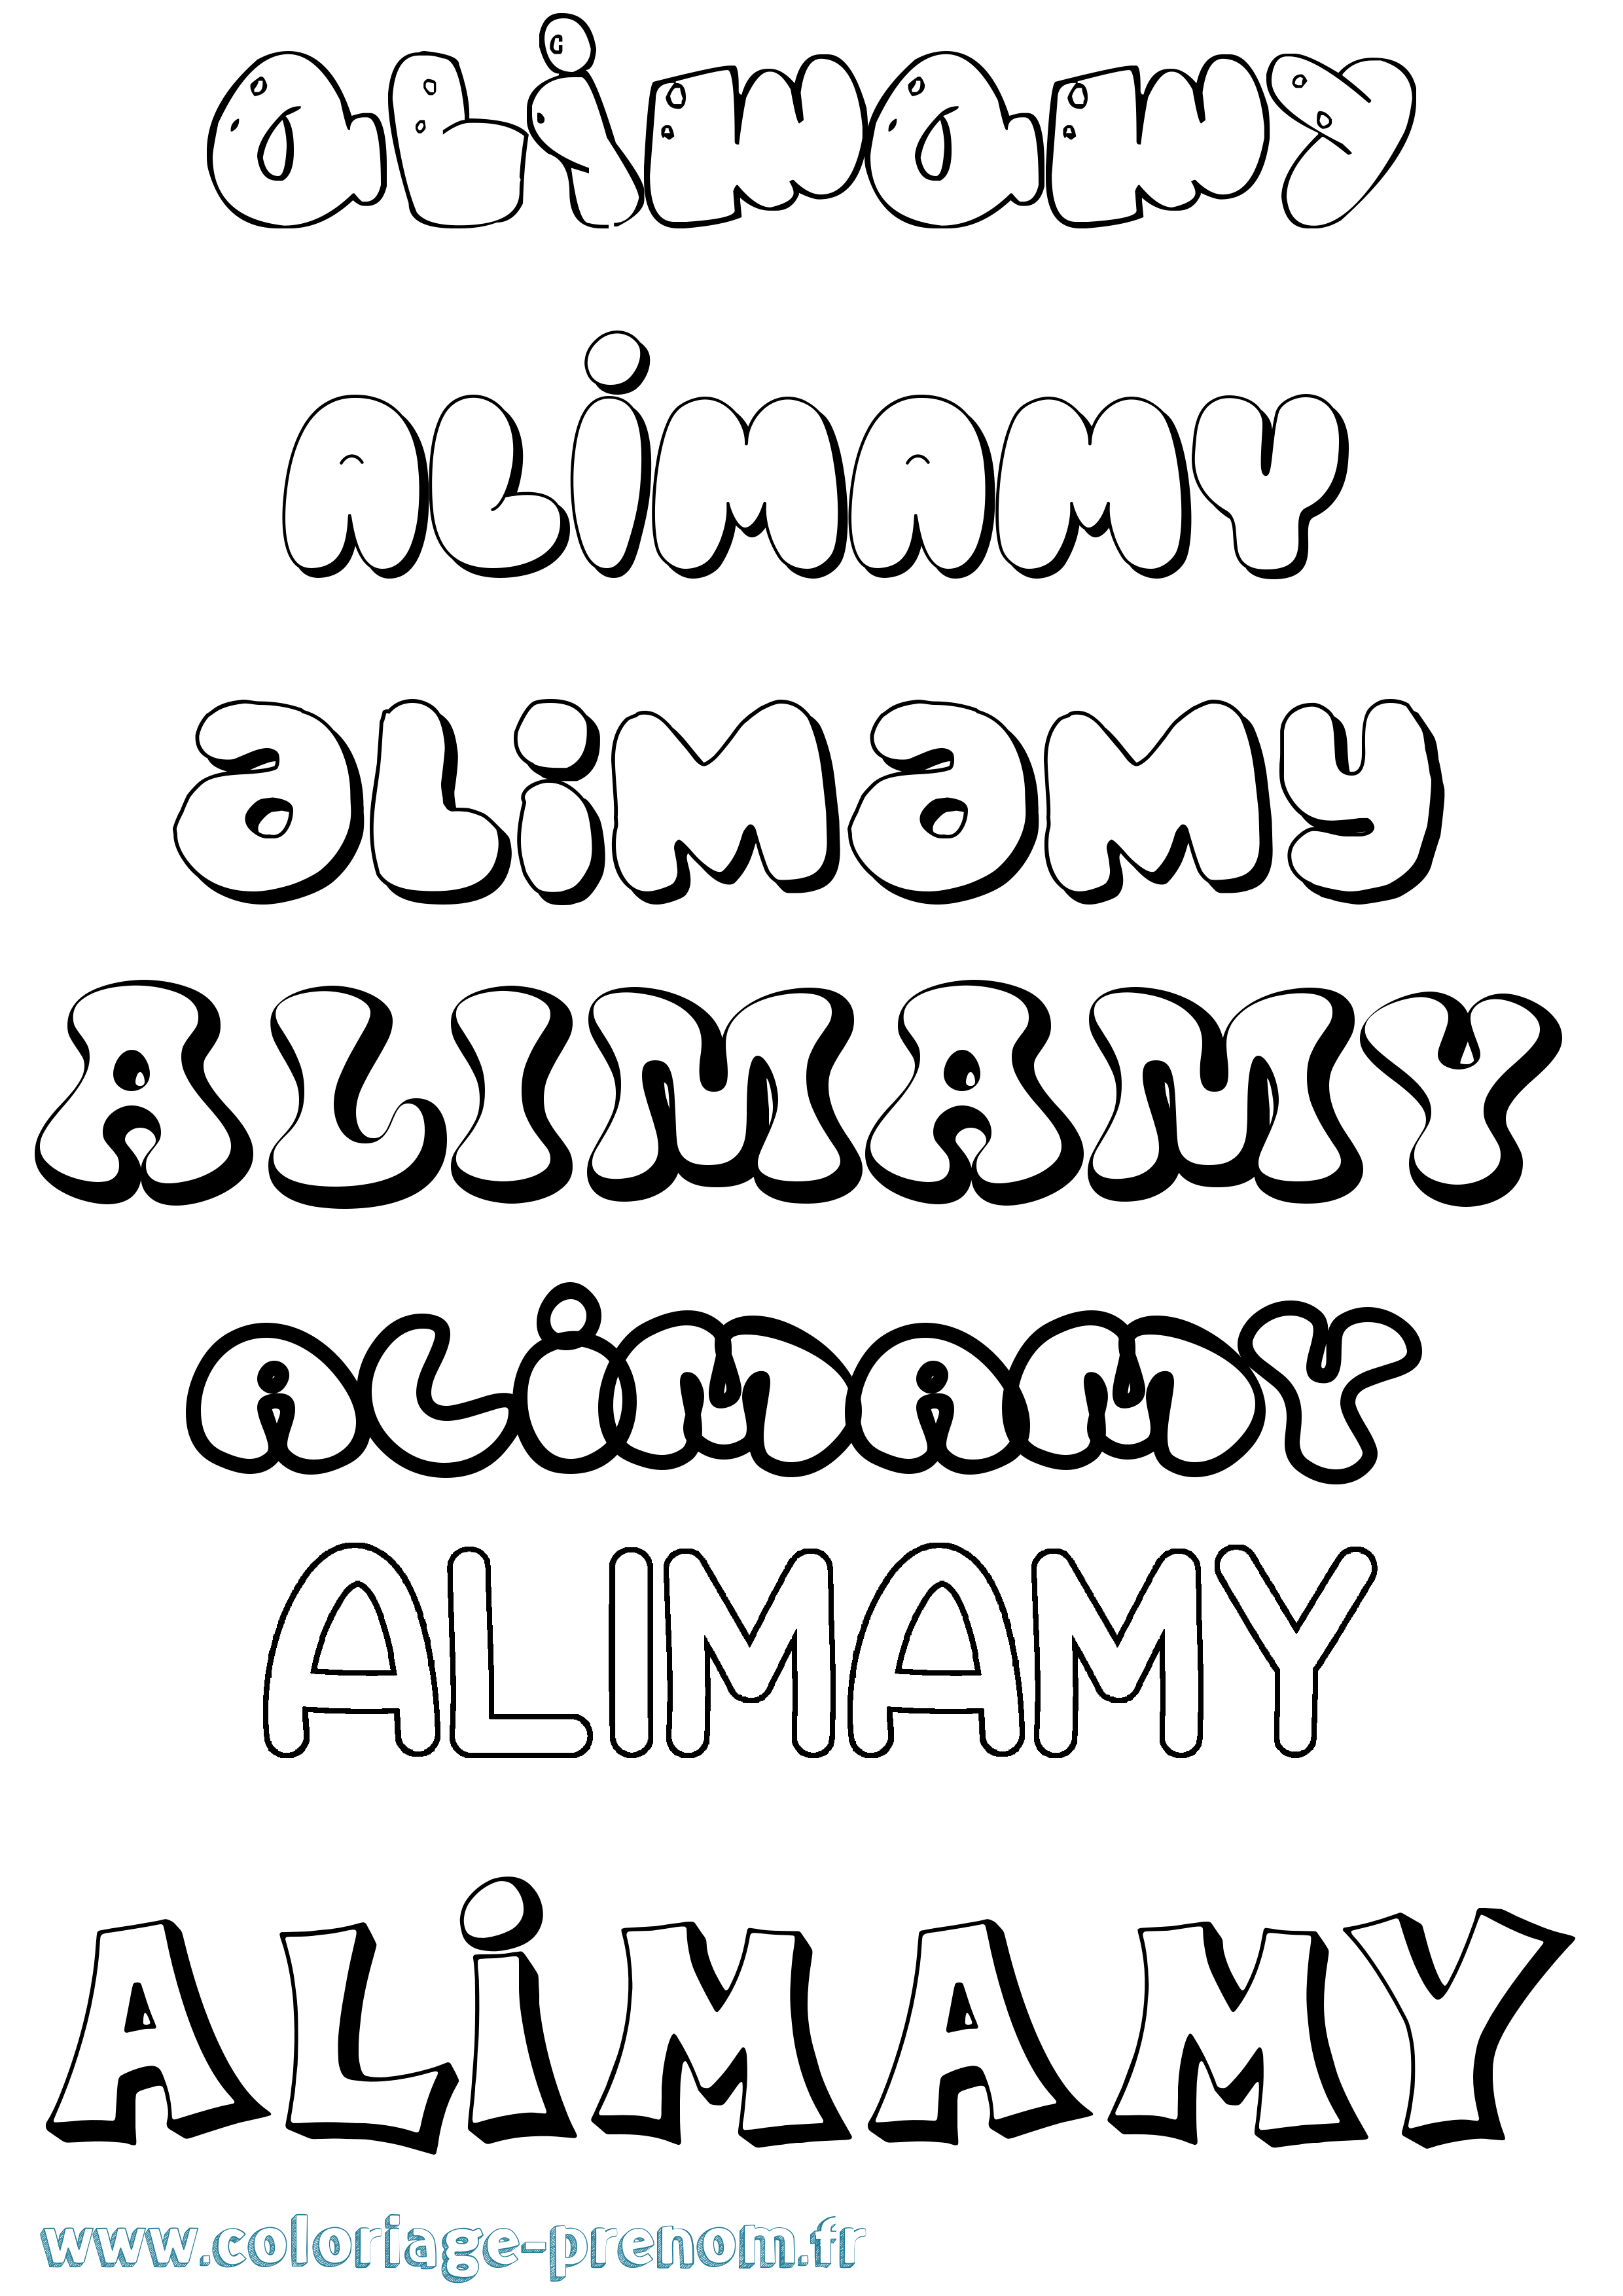 Coloriage prénom Alimamy Bubble